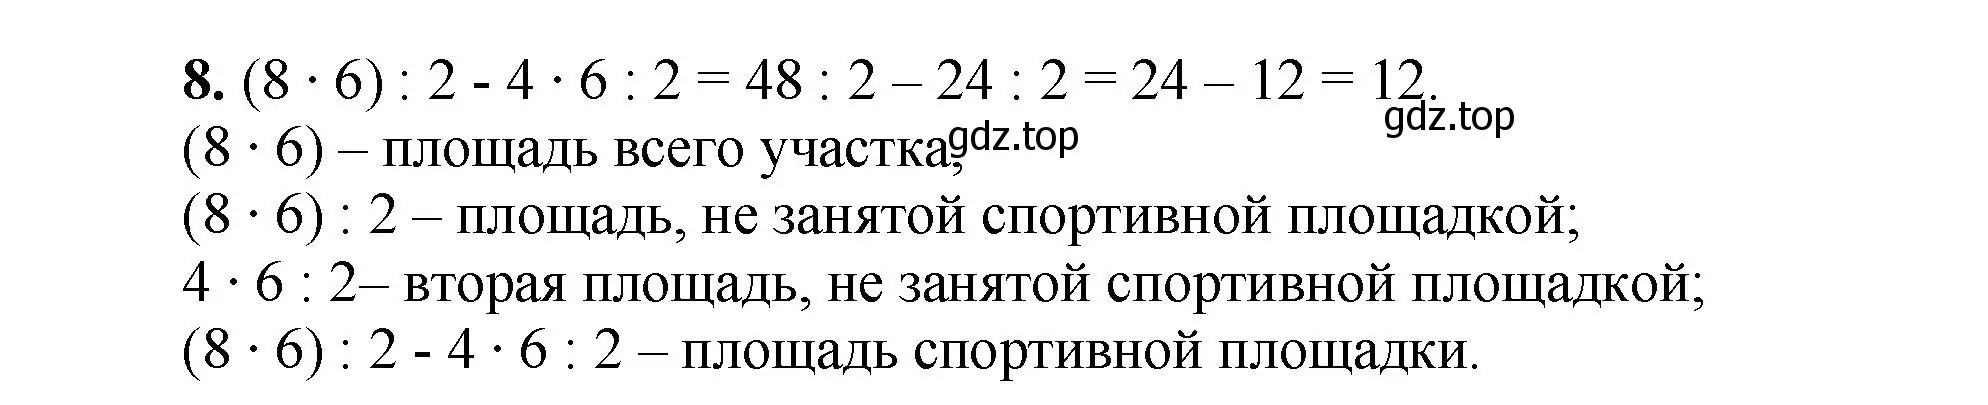 Решение номер 8 (страница 156) гдз по математике 5 класс Виленкин, Жохов, учебник 1 часть